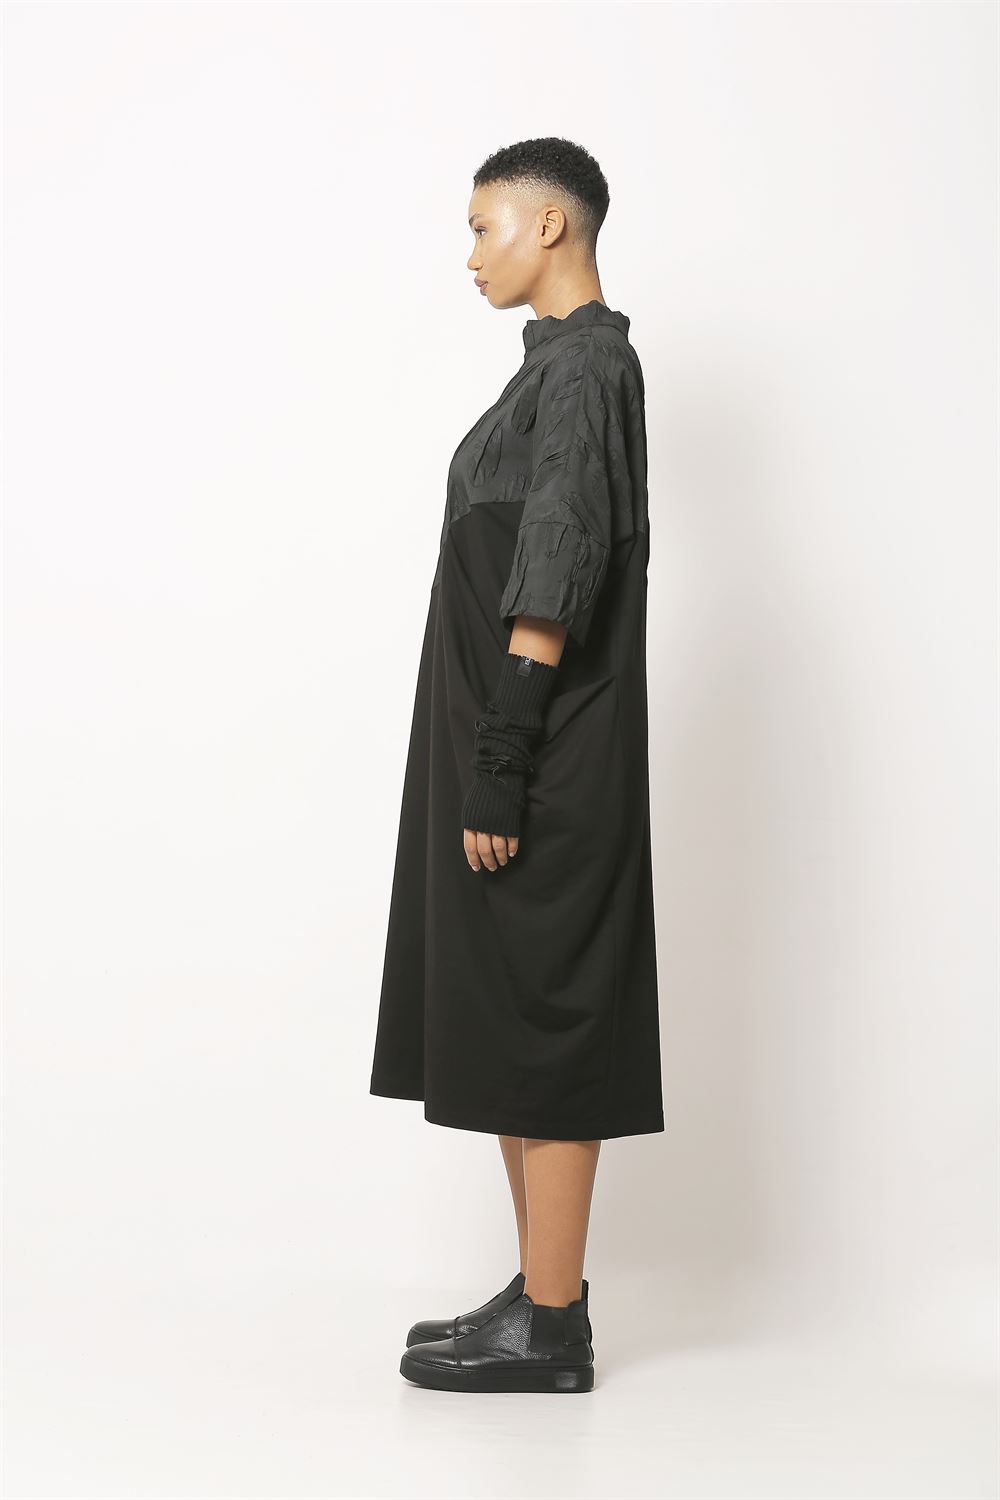 Jakarlı Düz Örme Kumaşlı Elbise - Siyah